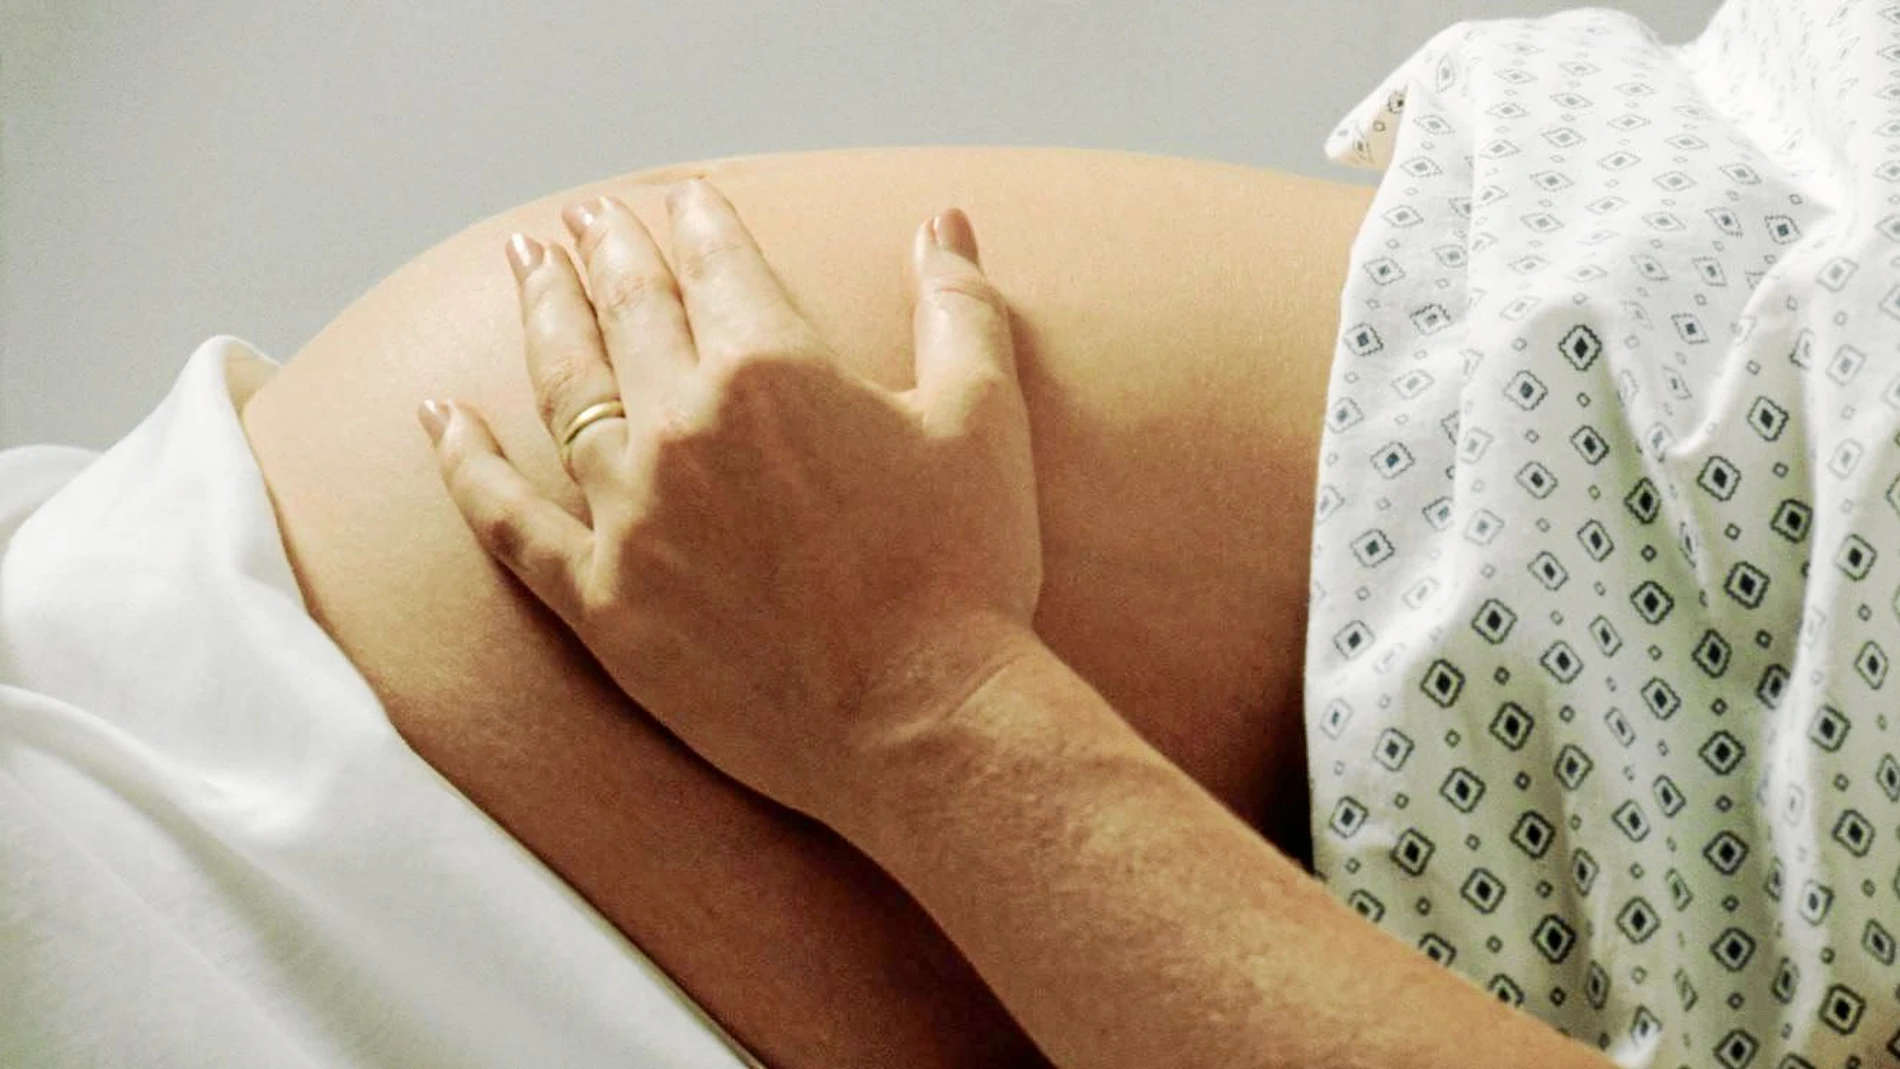 La preeclampsia es una de las principales causas de morbilidad y mortalidad materna y fetal, afecta entre el 2-10% de los embarazos